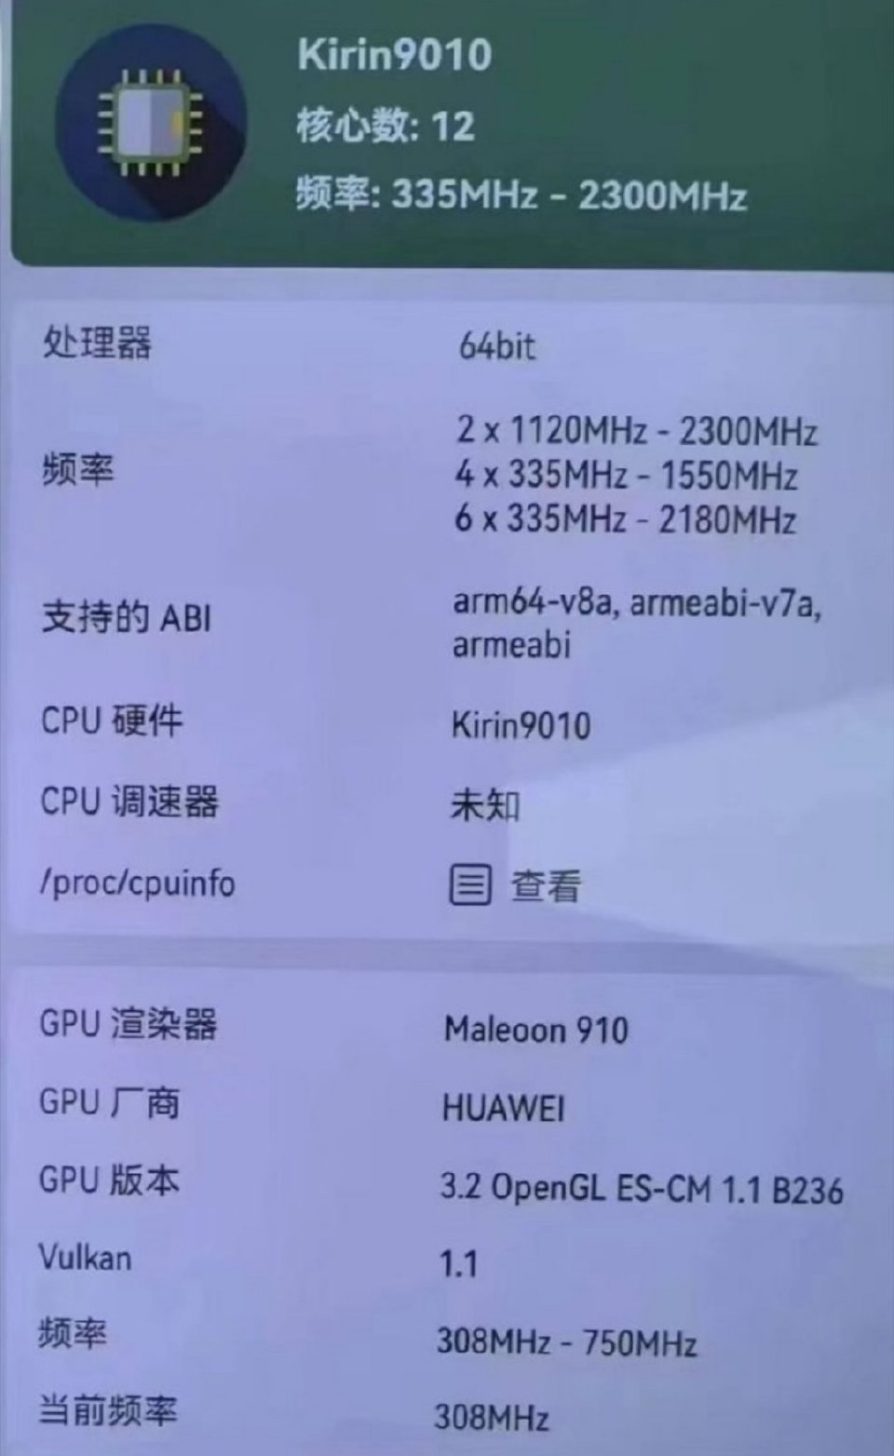 Kirin 9010 es el último teléfono inteligente SoC de Huawei con una matriz de CPU de 12 núcleos y se dice que es una versión más rápida del Kirin 9000S, litografía desconocida